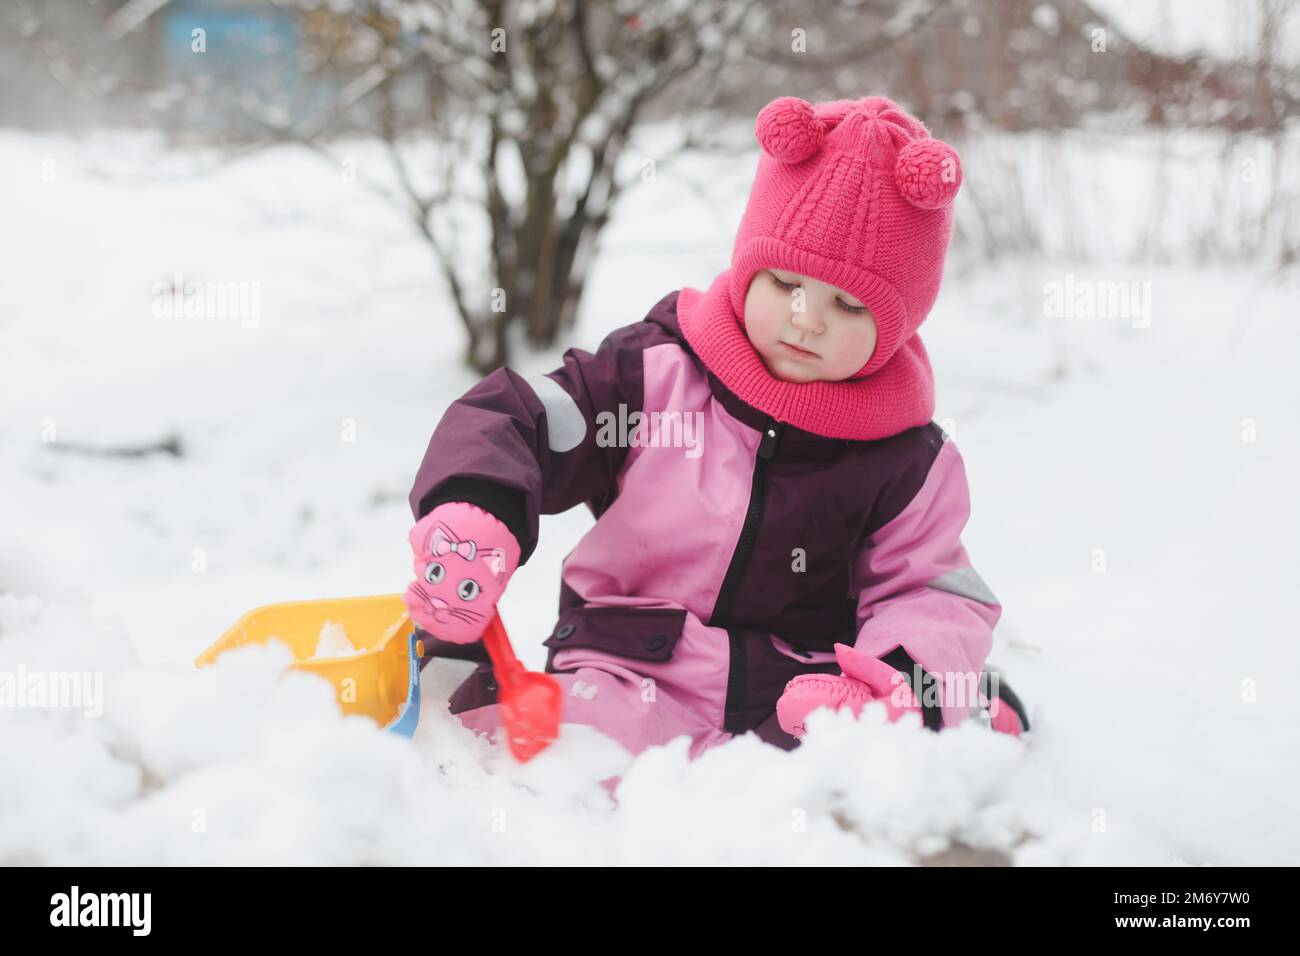 Adorabile ragazza scava neve con pala e secchio sul parco giochi coperto di neve. bambina che gioca in inverno all'aperto Foto Stock